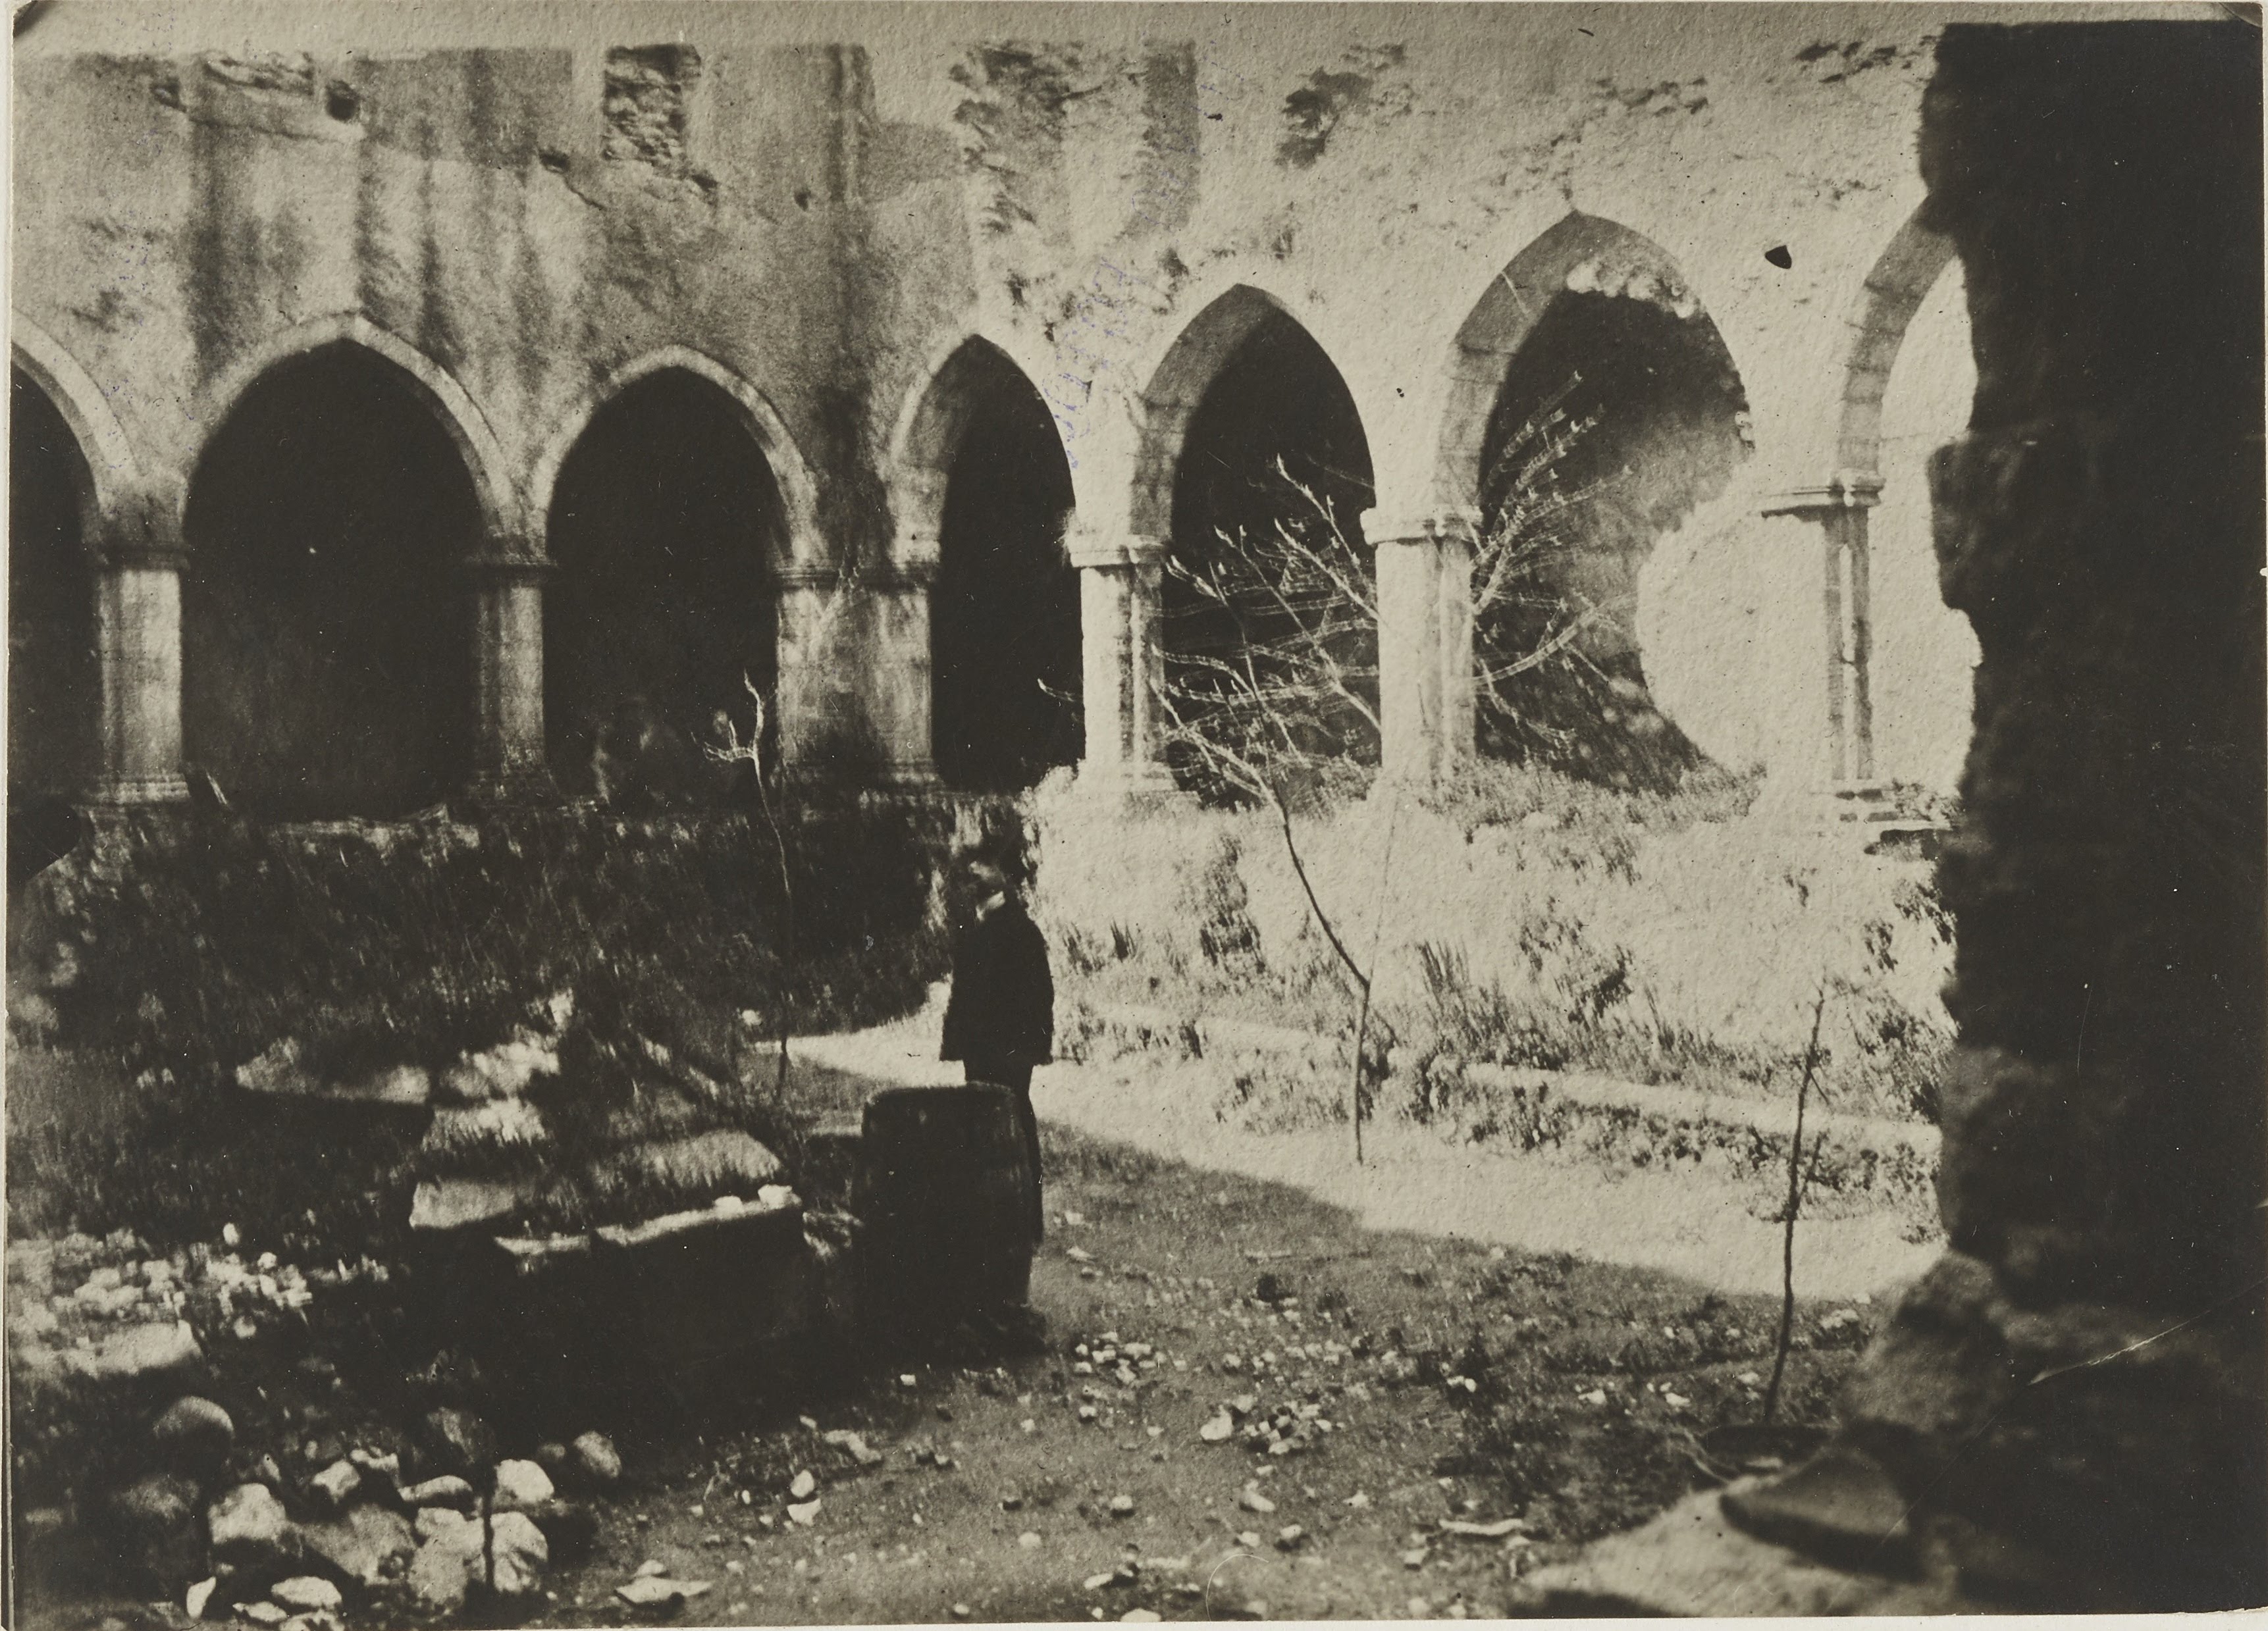 Fotografo non identificato, Cosenza - Chiesa di S. Francesco d'Assisi, chiostro, 1926-1950, gelatina ai sali d'argento, MPI156178